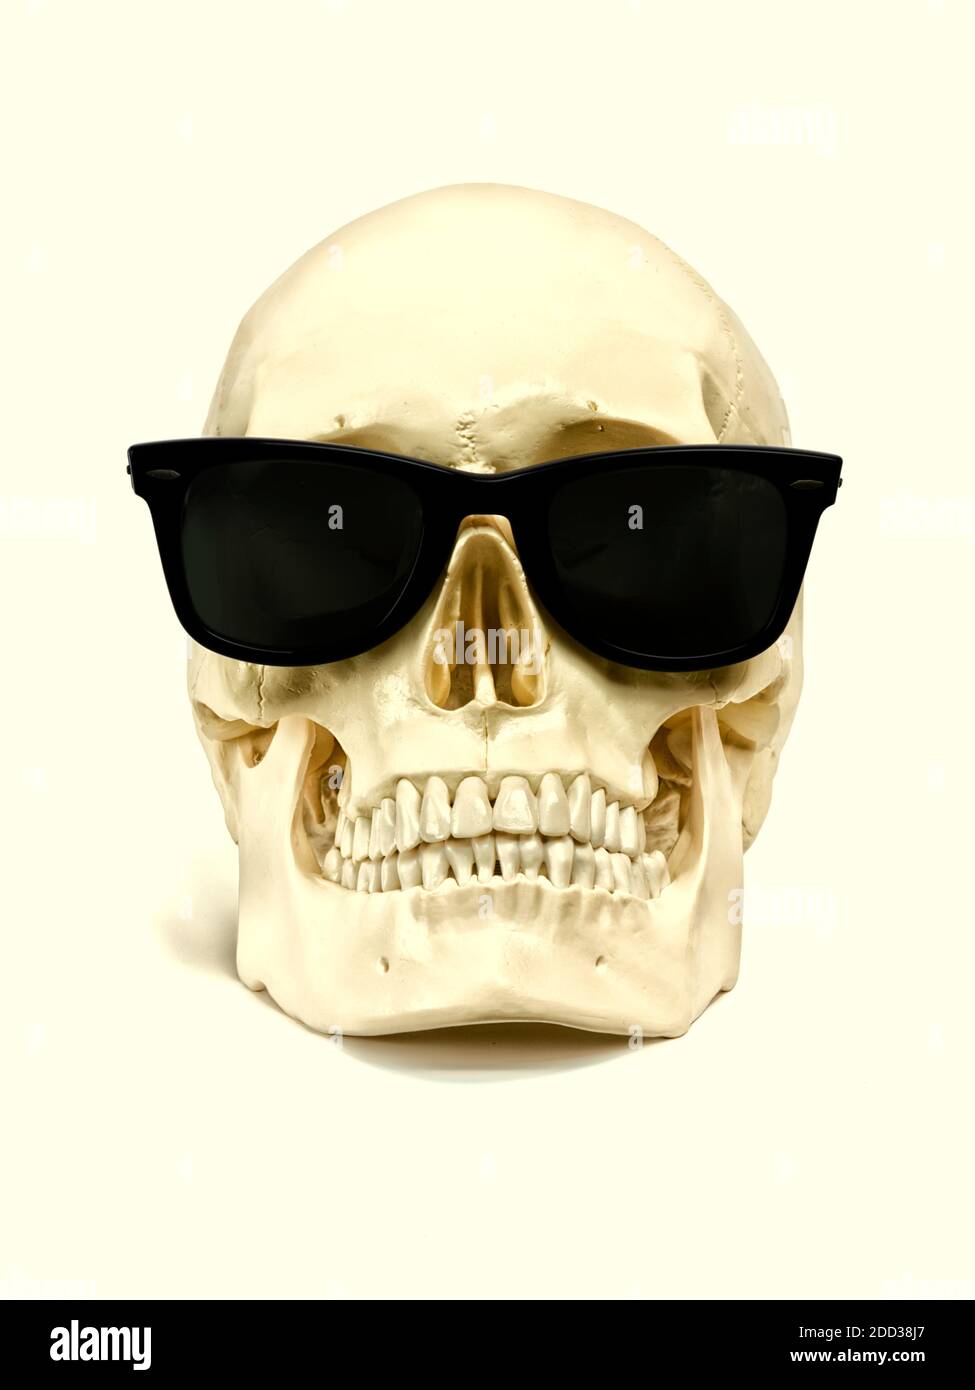 Crâne humain avec lunettes de soleil foncées Photo Stock - Alamy